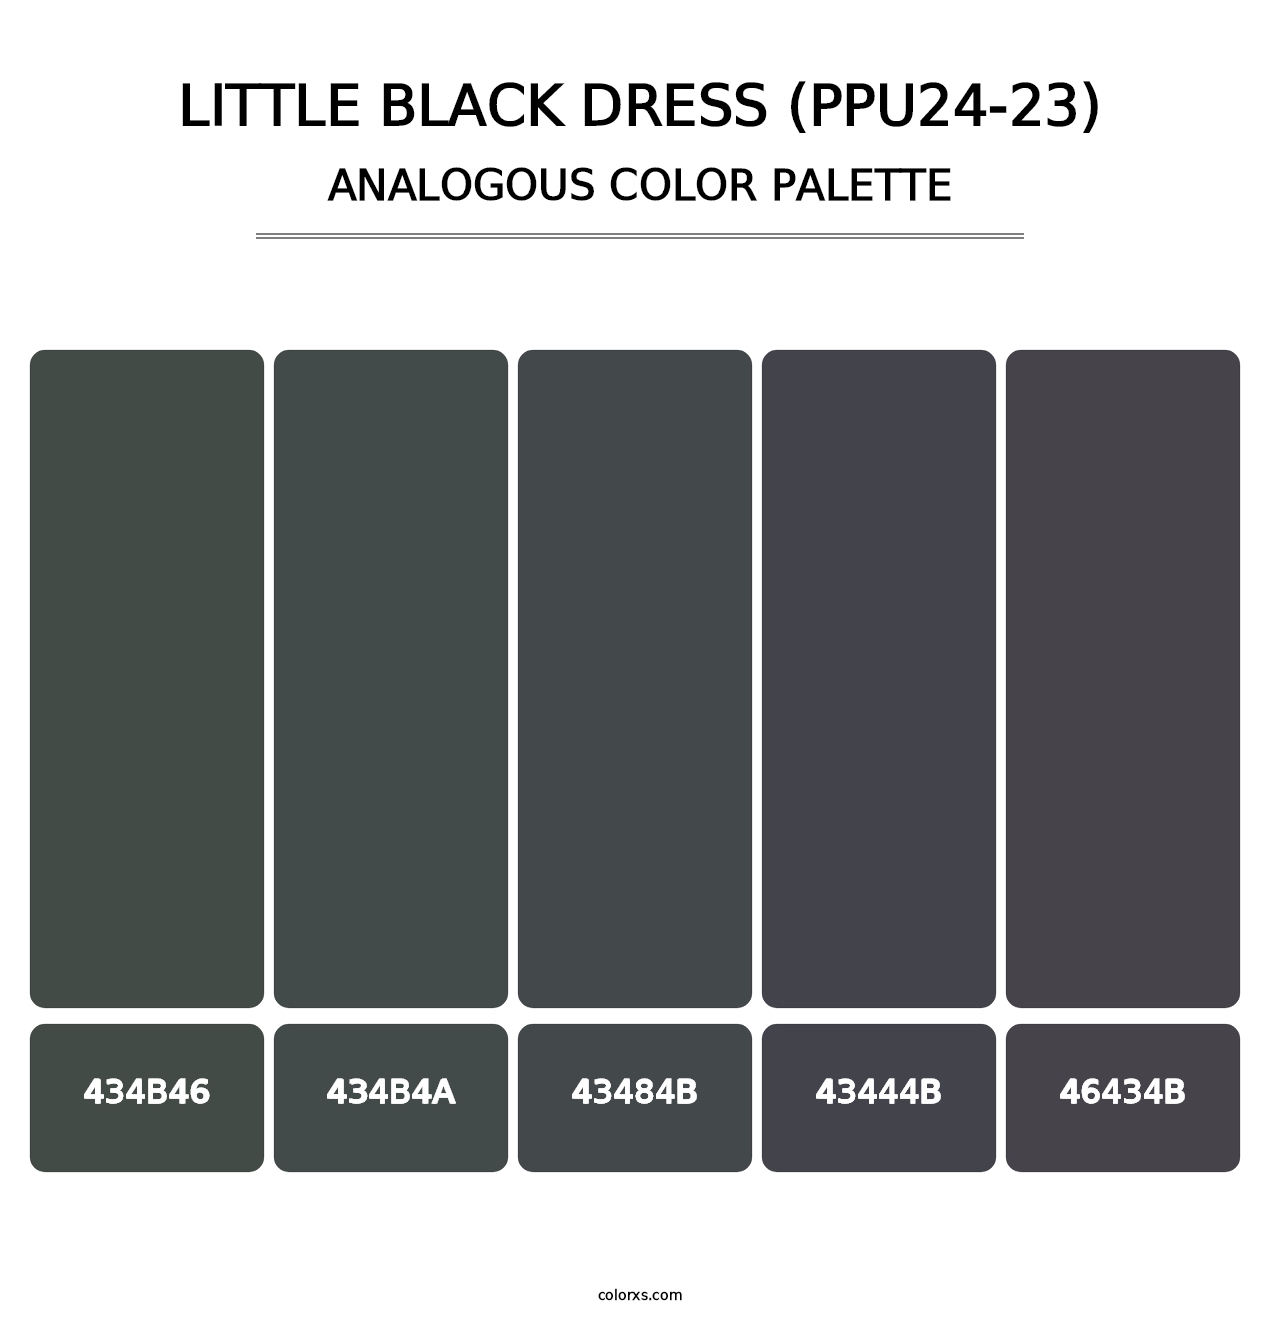 Little Black Dress (PPU24-23) - Analogous Color Palette